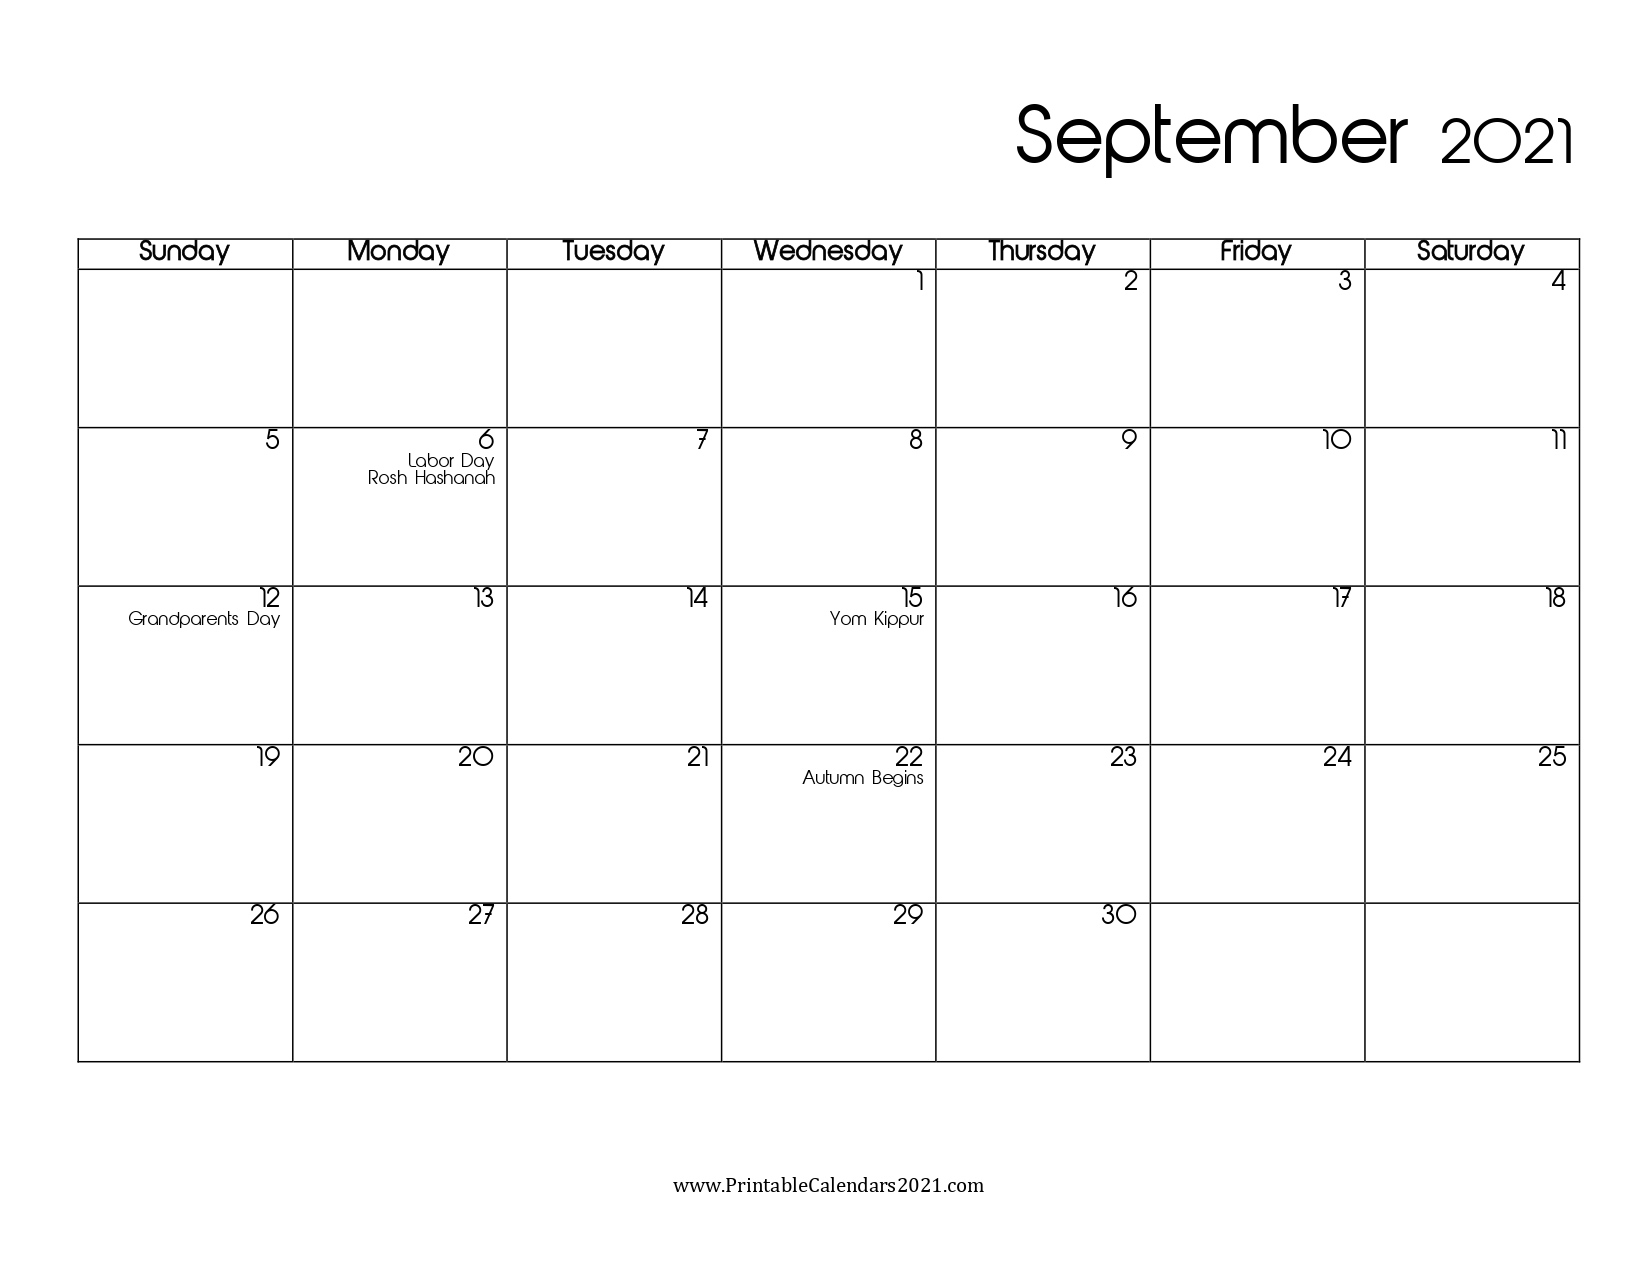 40+ September 2021 Calendar Printable, September 2021 Calendar Pdf September 2021 Calendar Pdf